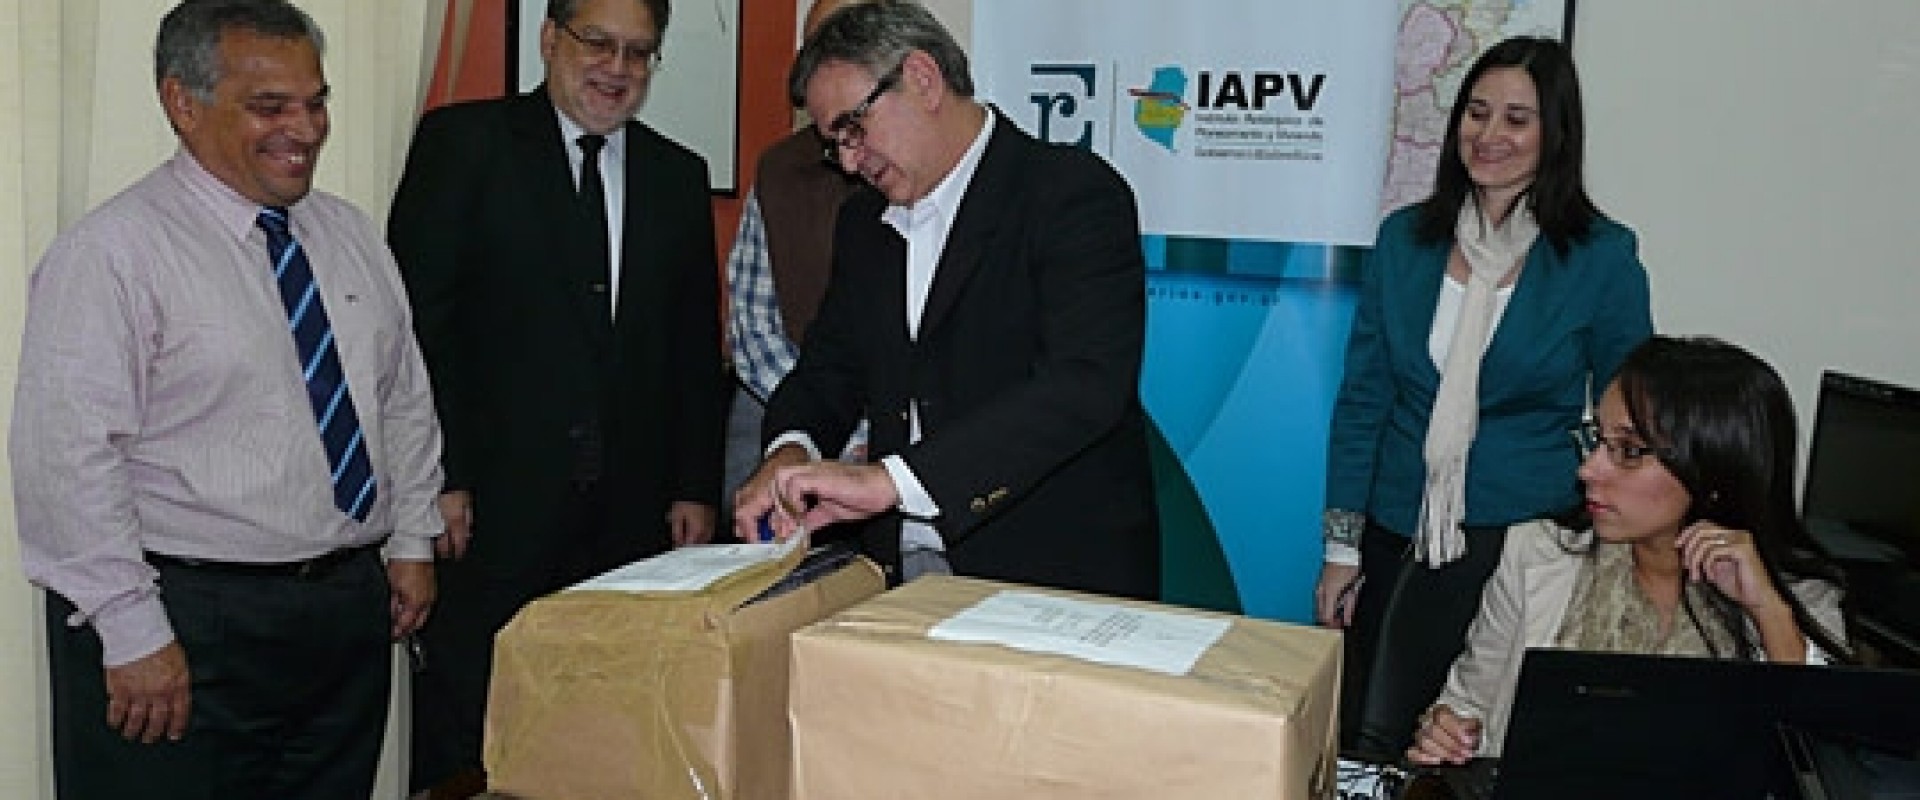 Construirán nuevas viviendas del IAPV en Rosario del Tala, Gobernador Sola, Aldea Santa María y Conscripto Bernardi